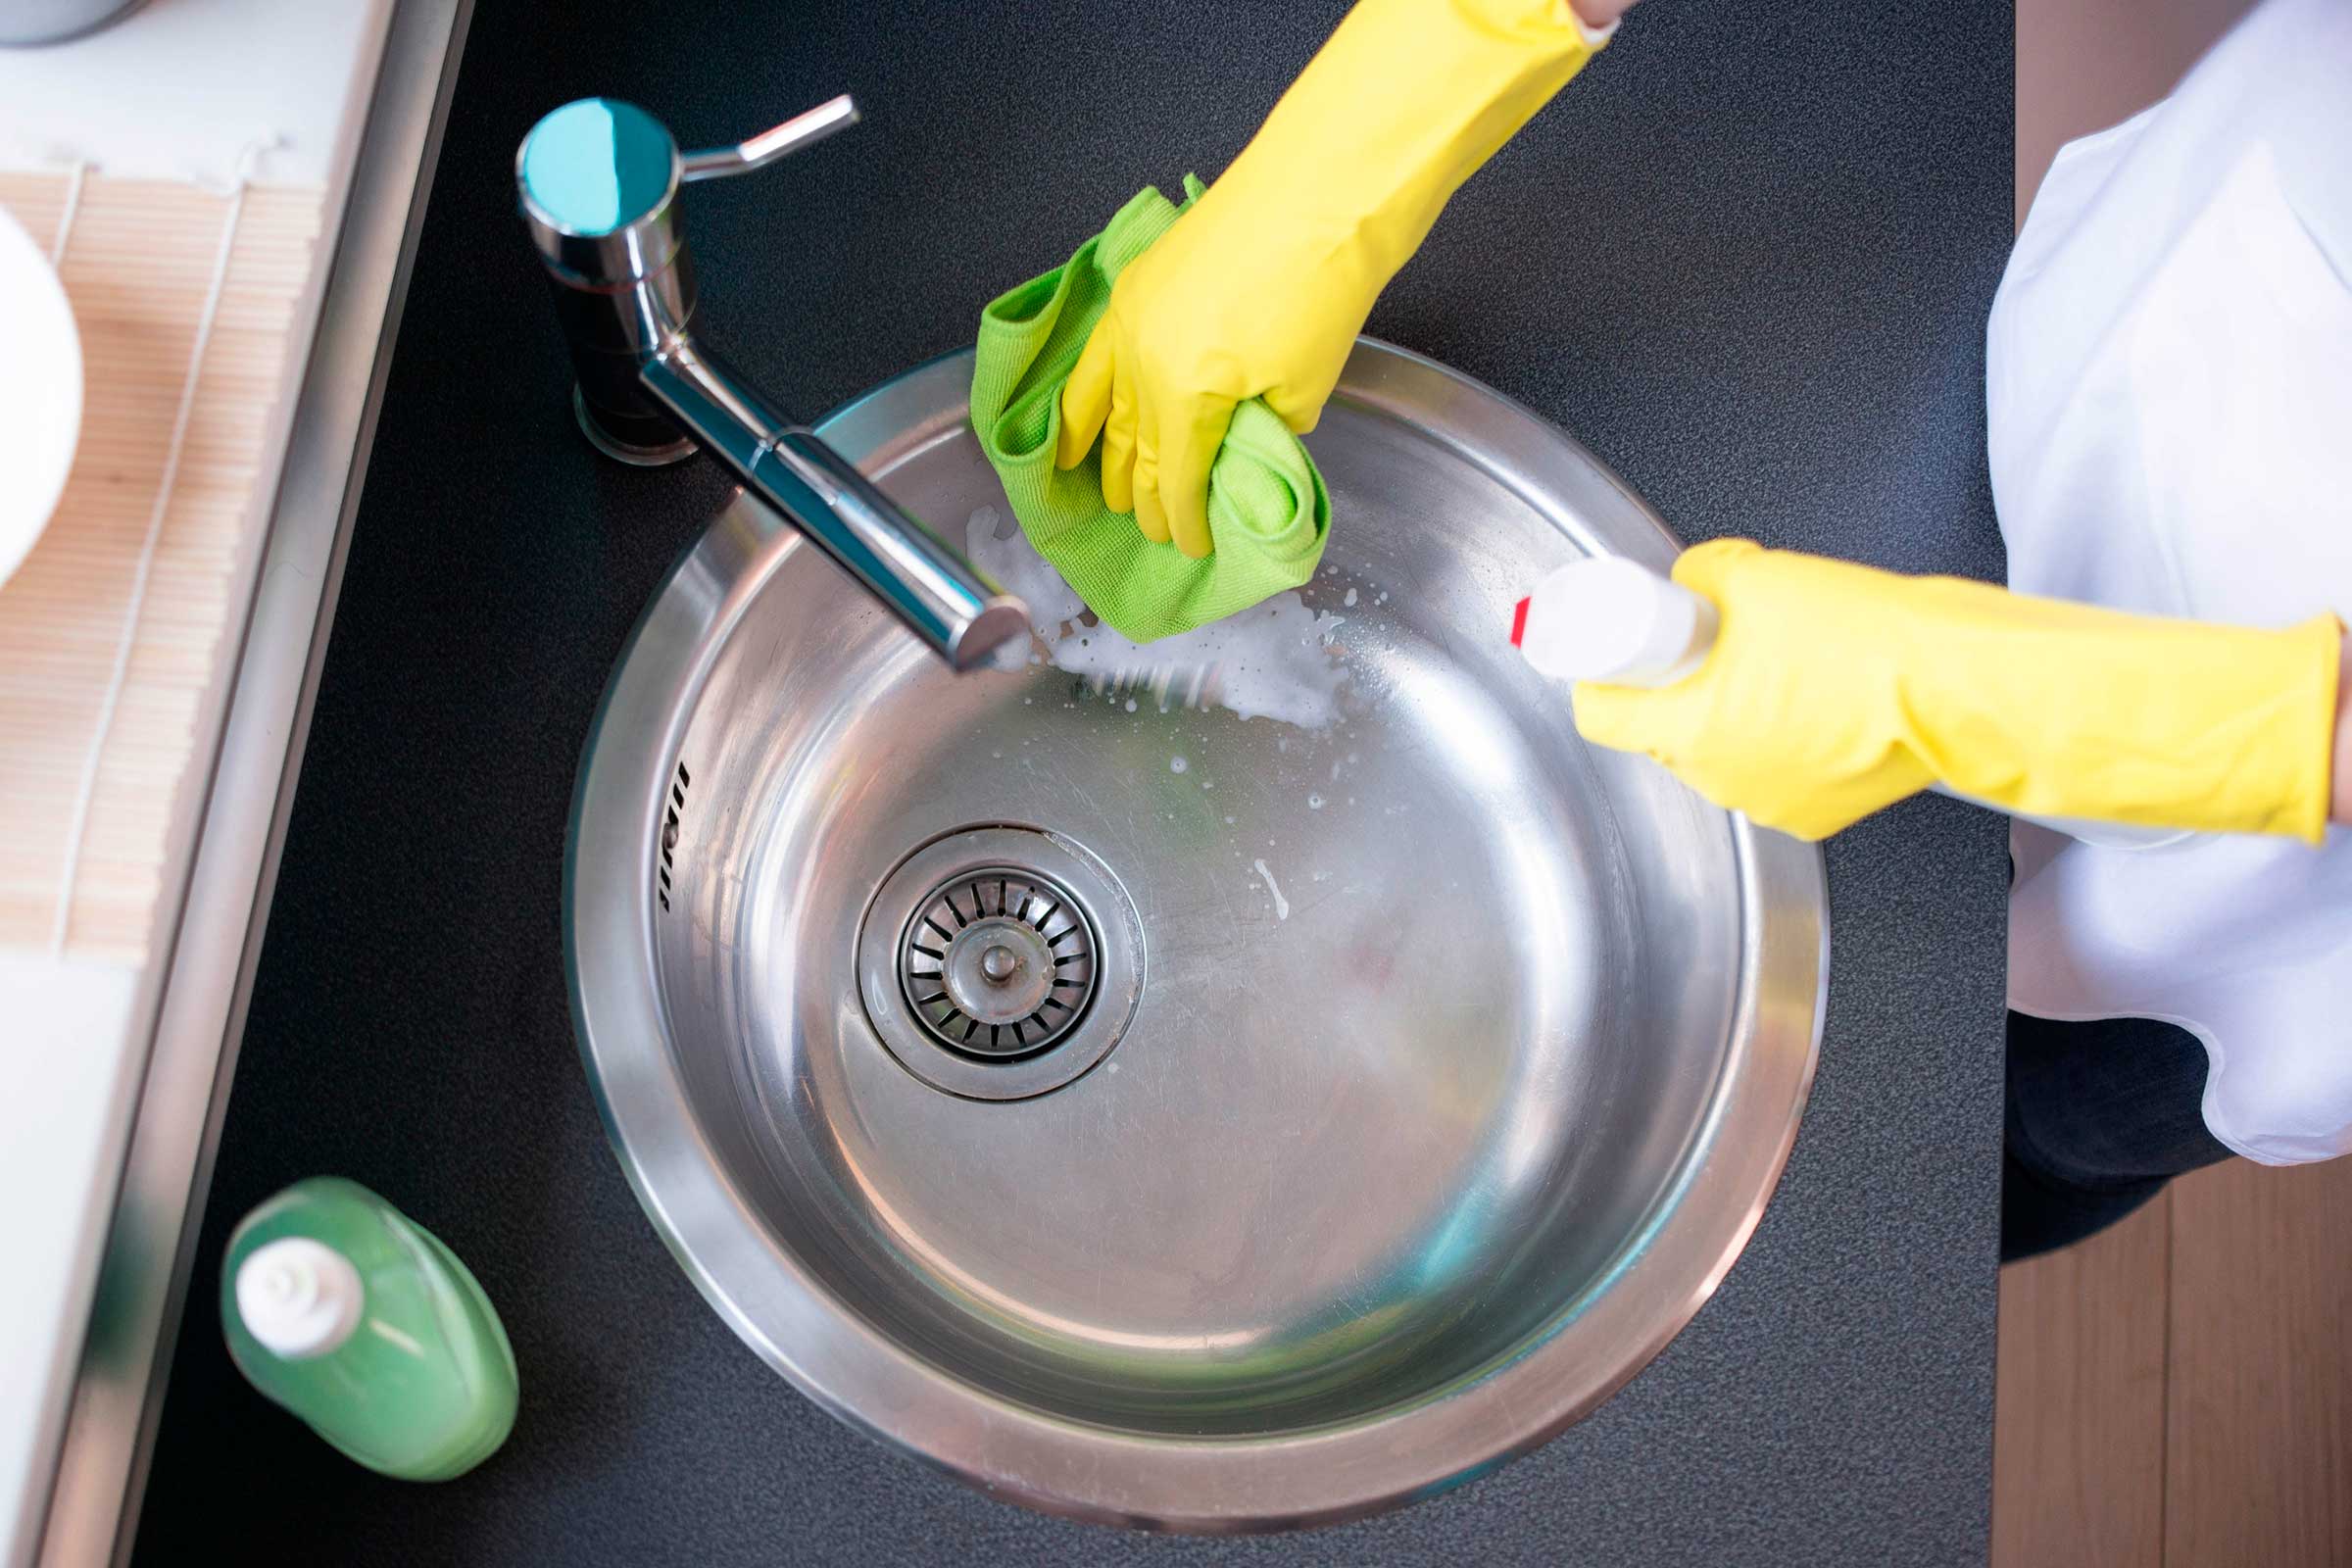 Засорилась раковина на кухне: как выполнить чистку своими руками, инструкция, фото и видео-уроки